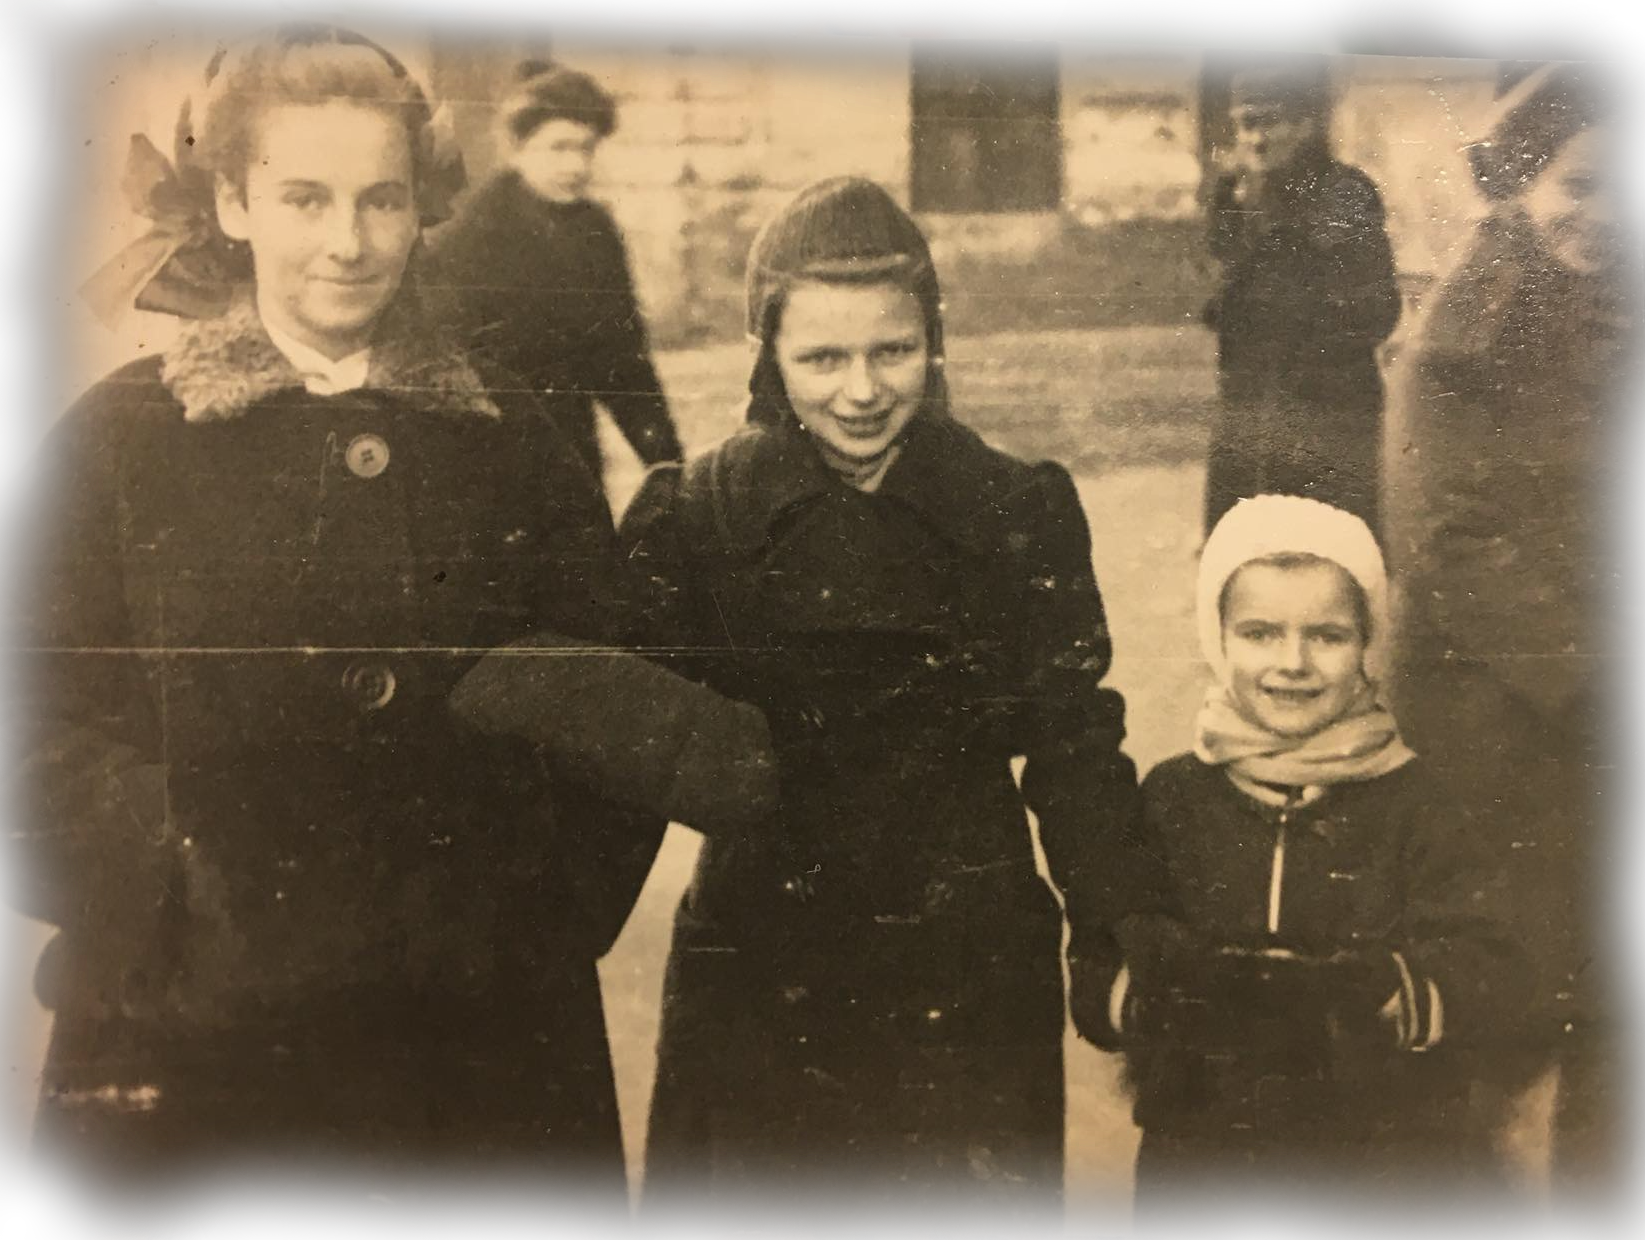 Od lewej: Bogda, Irka, Pani Ania (Fot. archiwum prywatne).